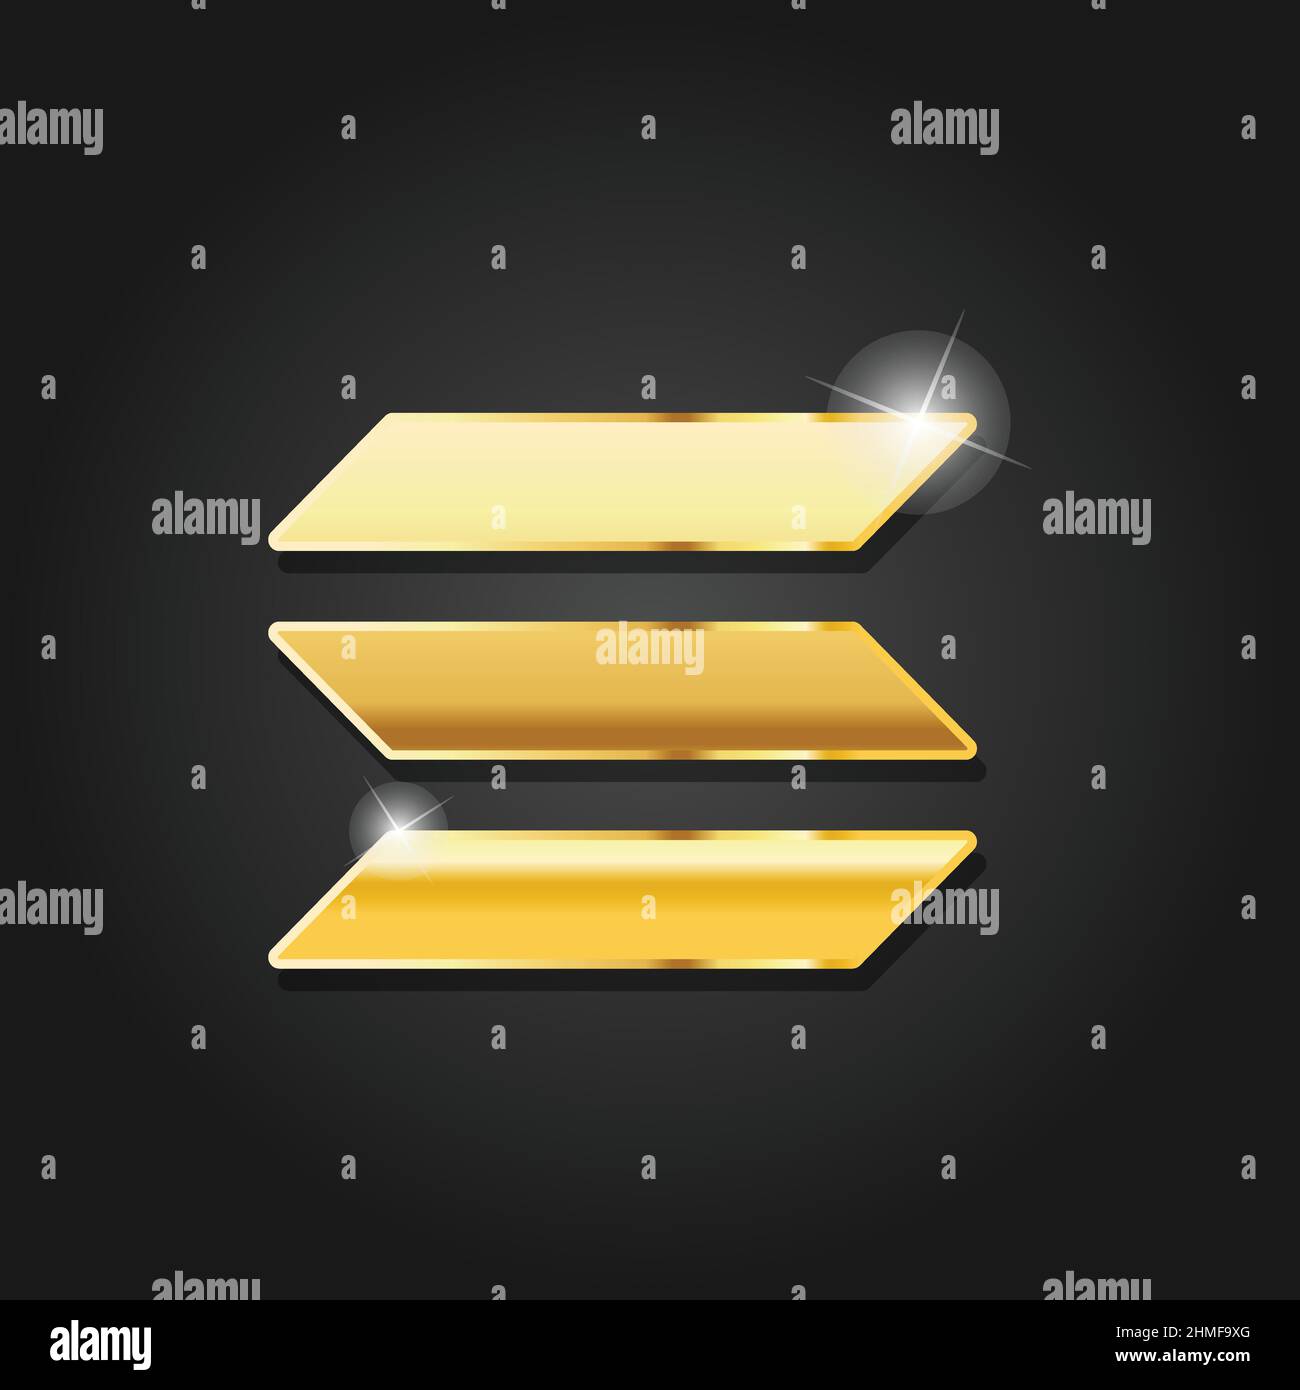 Imagen vectorial con símbolo de insignia de solana brillante de color dorado. Moneda de criptomoneda digital dorada. Símbolo de dinero de finanzas electrónicas. Ilustración del Vector